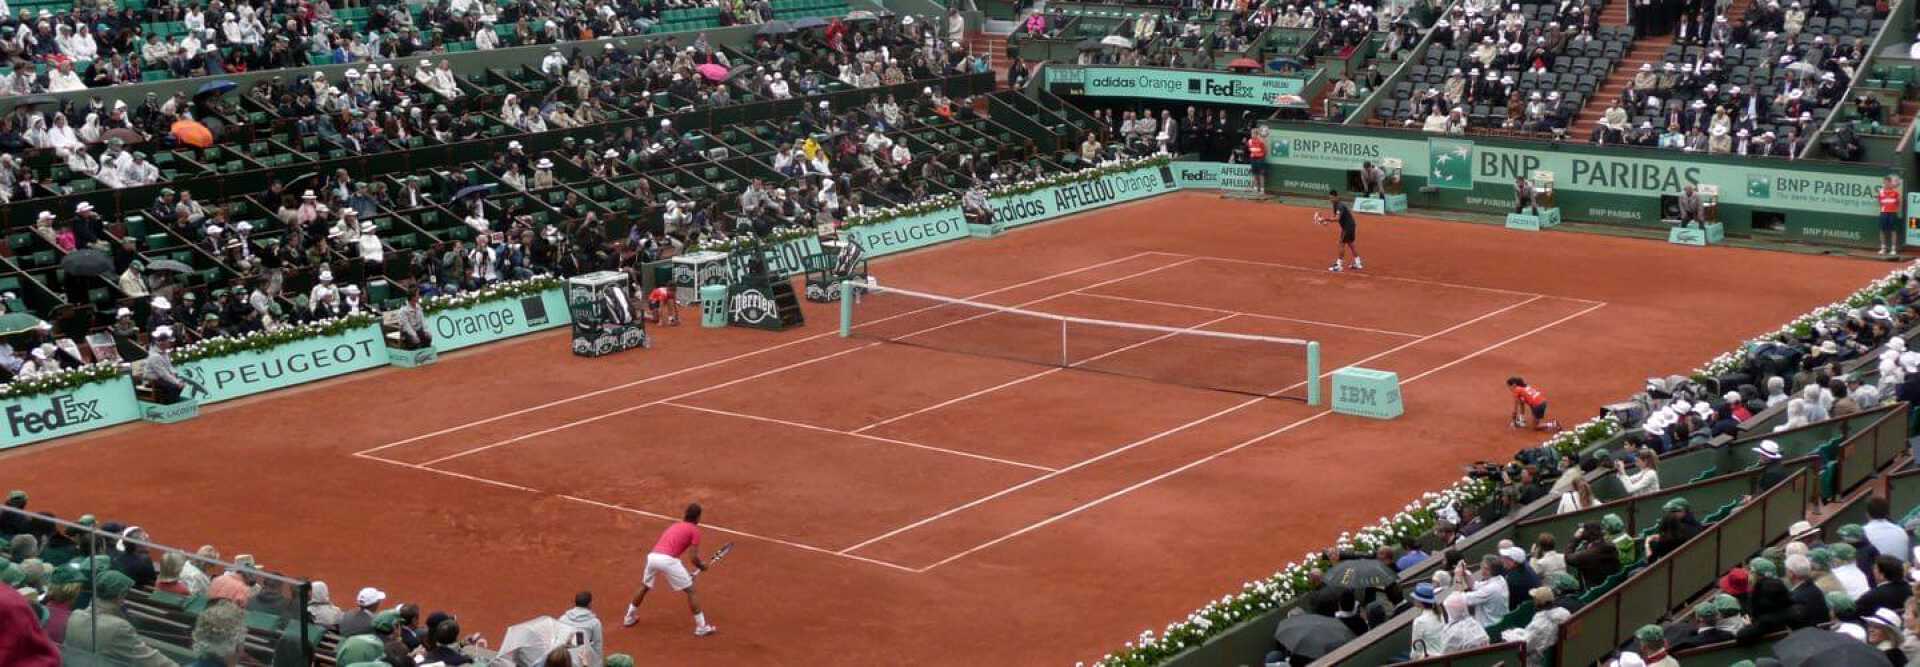 Match simple sur la terre battue d'un court de tennis de Roland Garros à Paris France